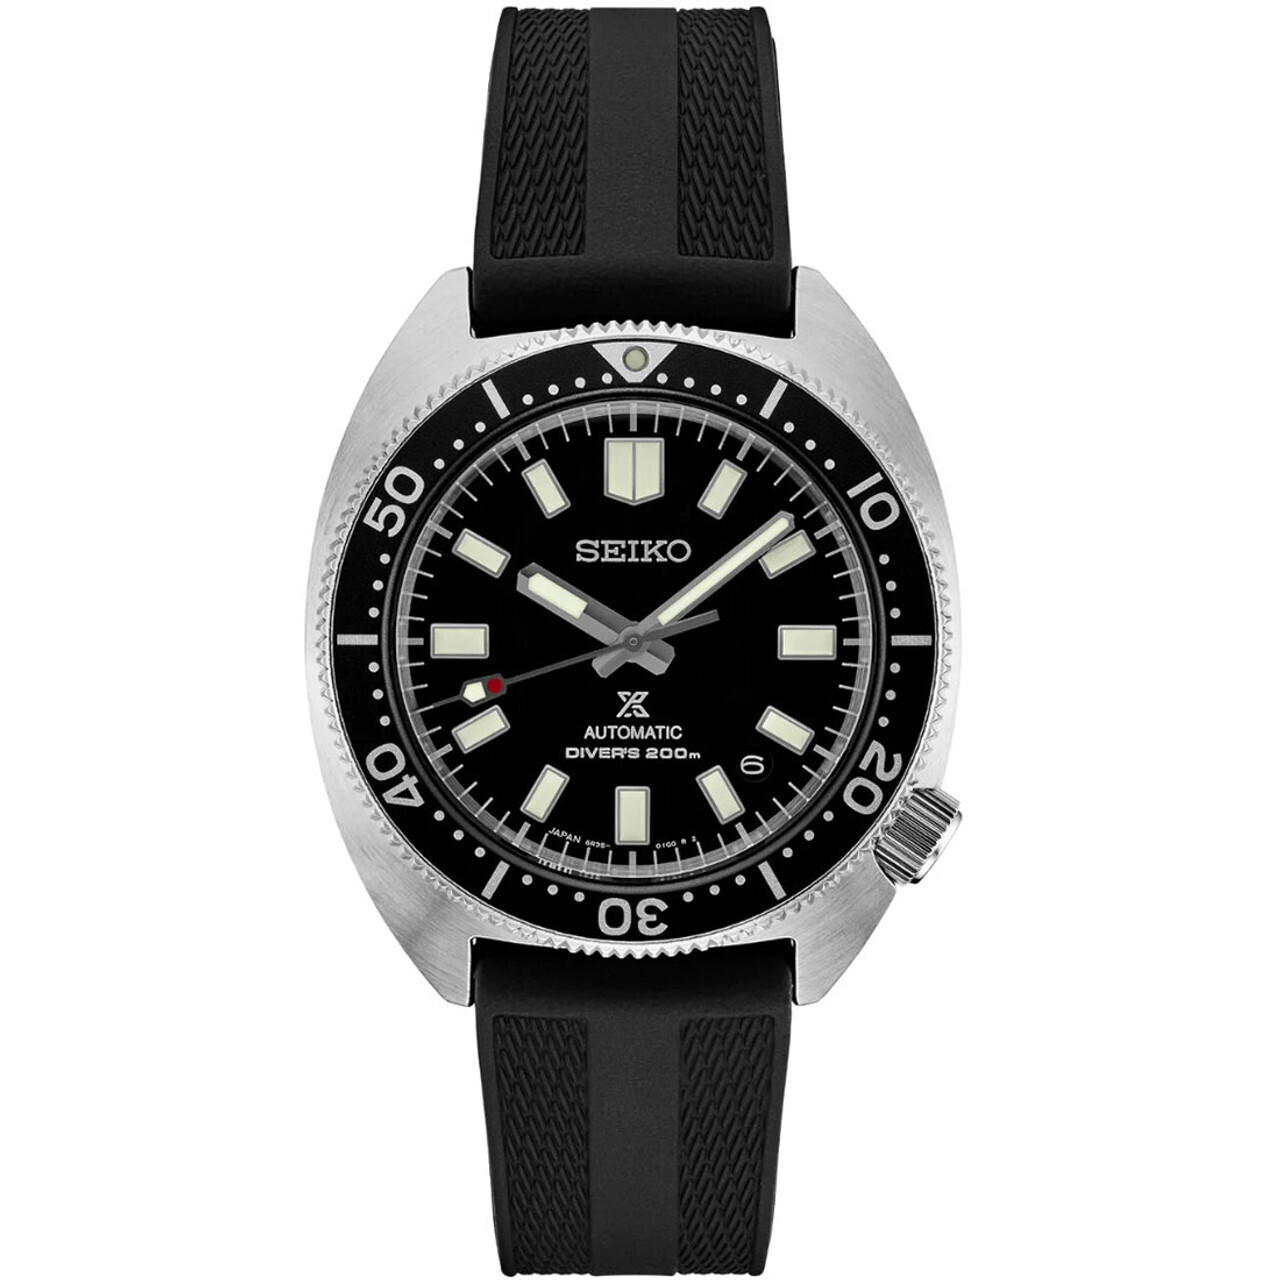 Reloj automático buceo hombre Seiko Prospex Turtle SPB317J1 dial negro 41mm Cristal de Zafiro anti-reflejo Resistencia magnética 4,800 A/m correa de silicona 200m resistente al agua